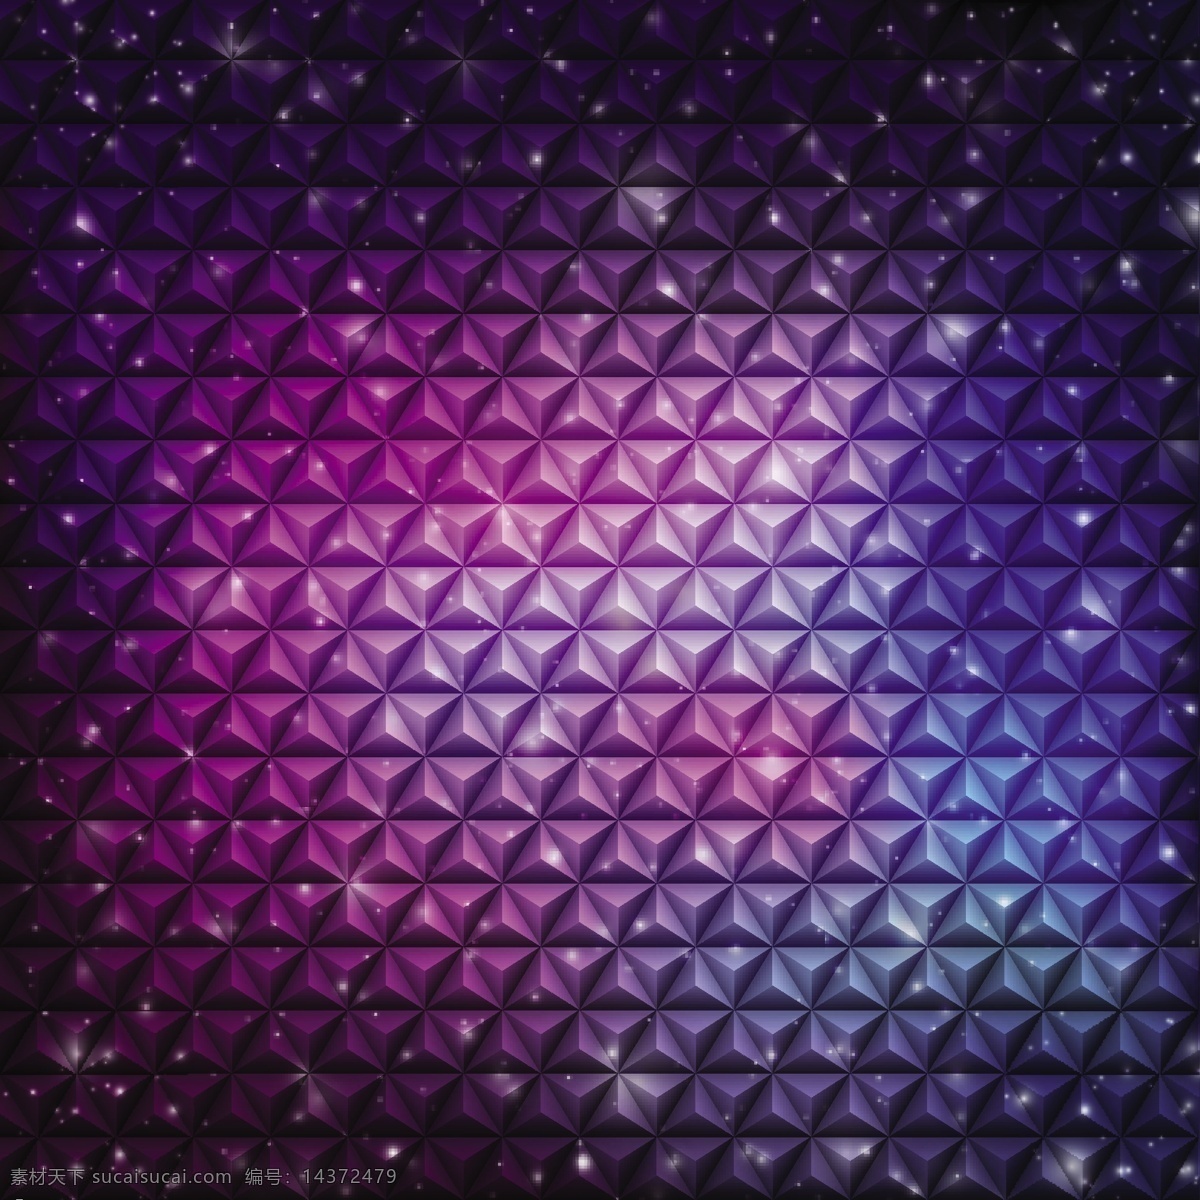 紫色 立体 抽象 背景 紫色立体背景 紫色光效背景 三角体背景 紫色菱形背景 梦幻三角背景 底纹边框 背景底纹